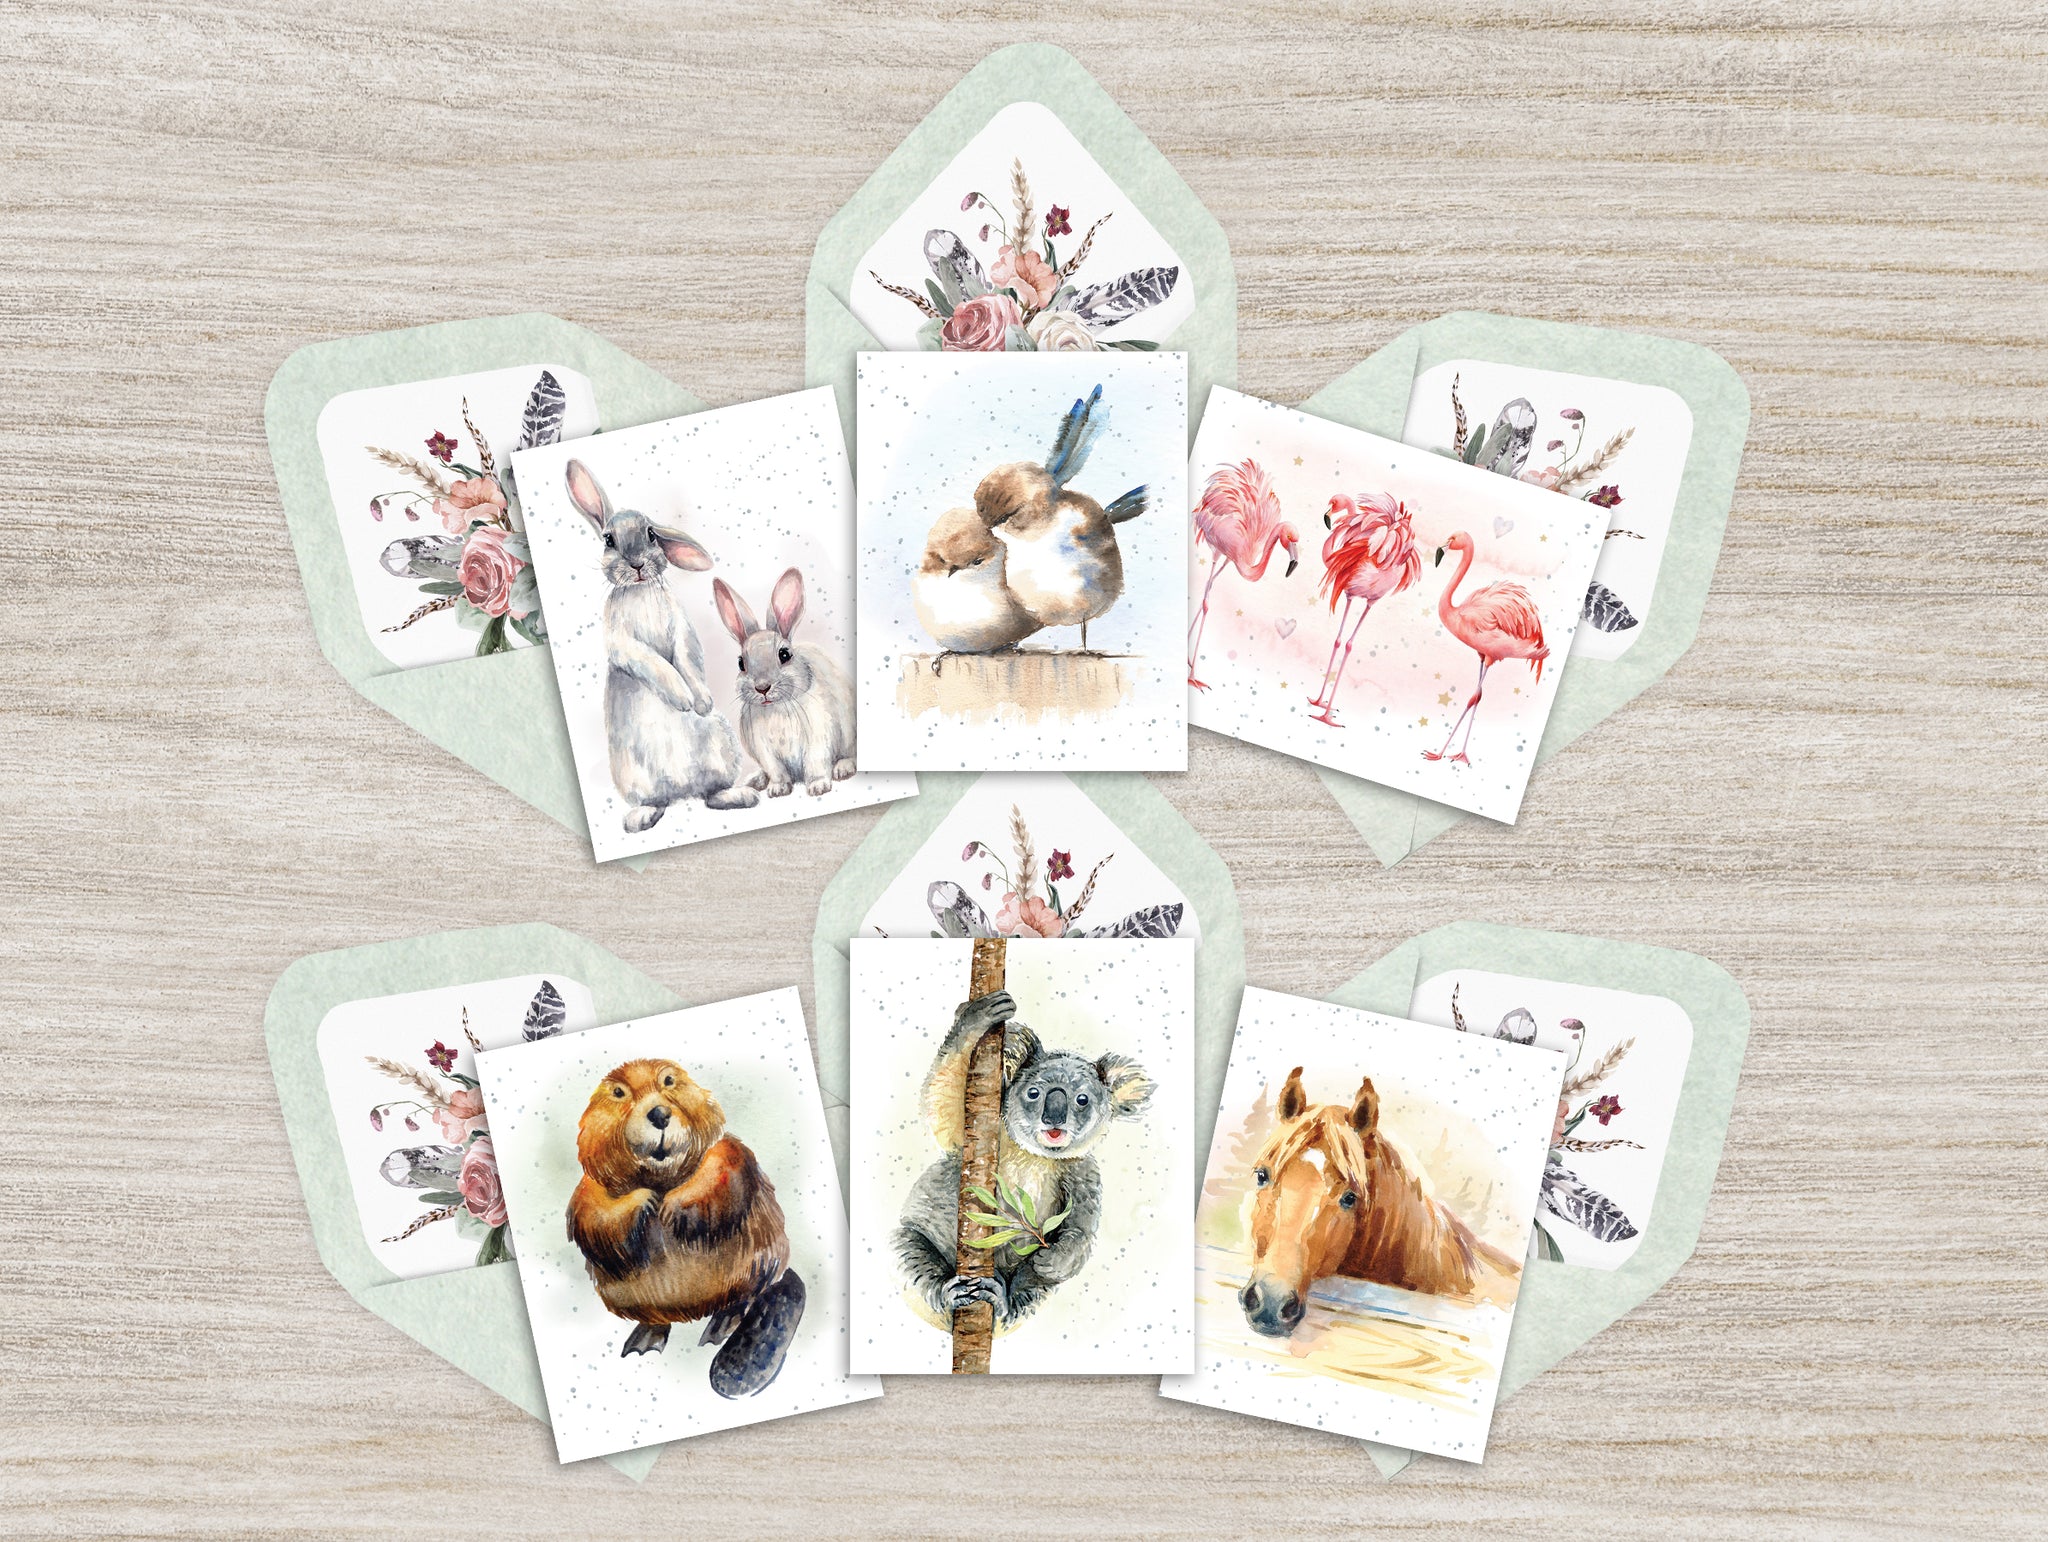 Hopper Studios Enclosure Cards - Mixed 6 packs